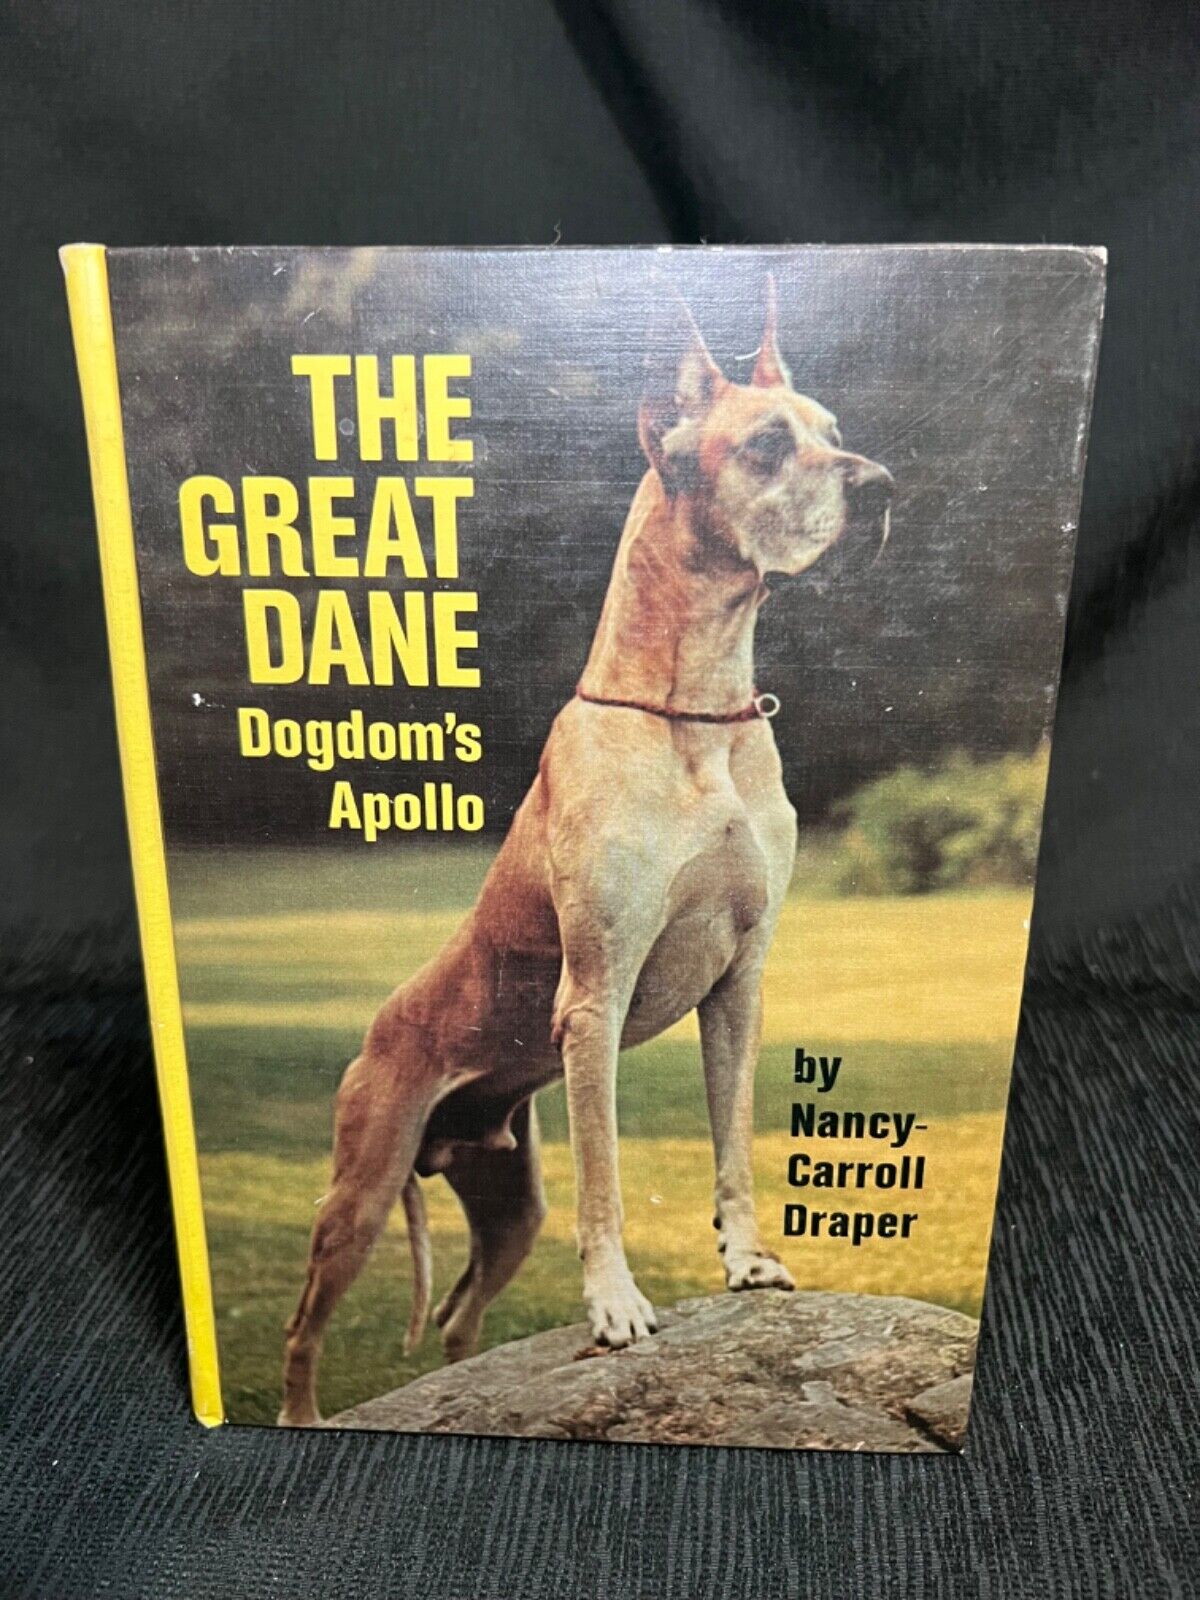 RARE DOG BOOK “THE GREAT DANE Dogdom’s Apollo” 1987 Nancy Carrell Draper VG+